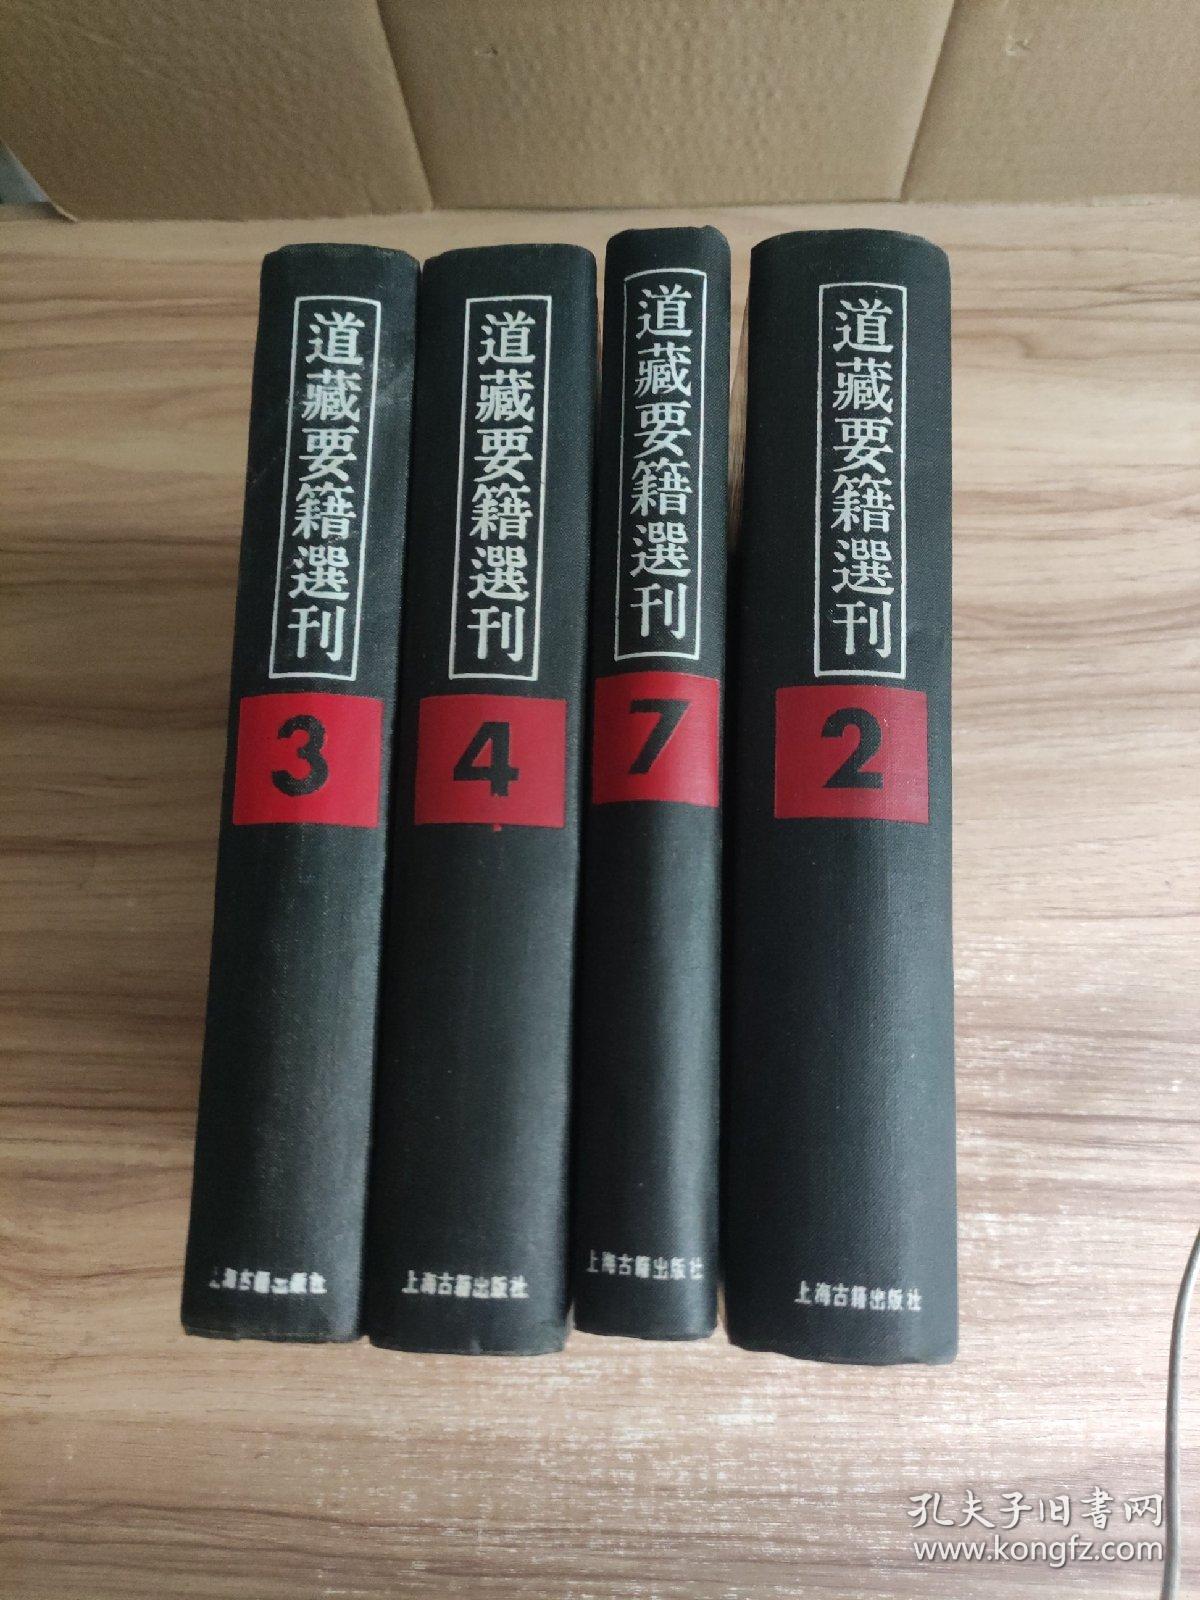 《道藏要籍选刊》 2、3、4、7、共4册合拍！16开精装